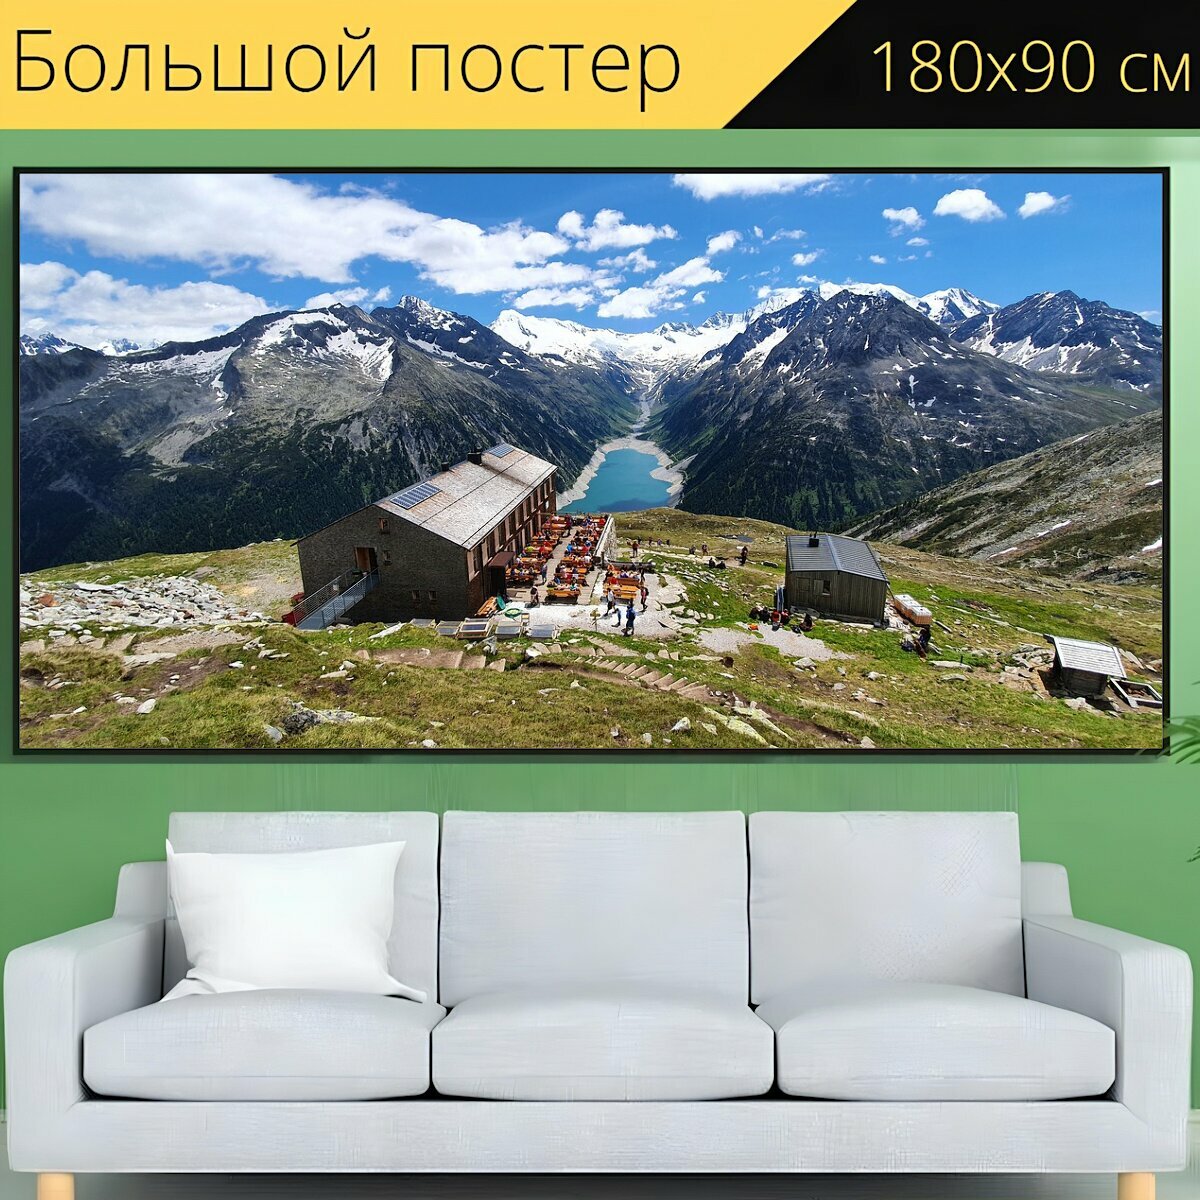 Большой постер "Горы, курорт, горный курорт" 180 x 90 см. для интерьера